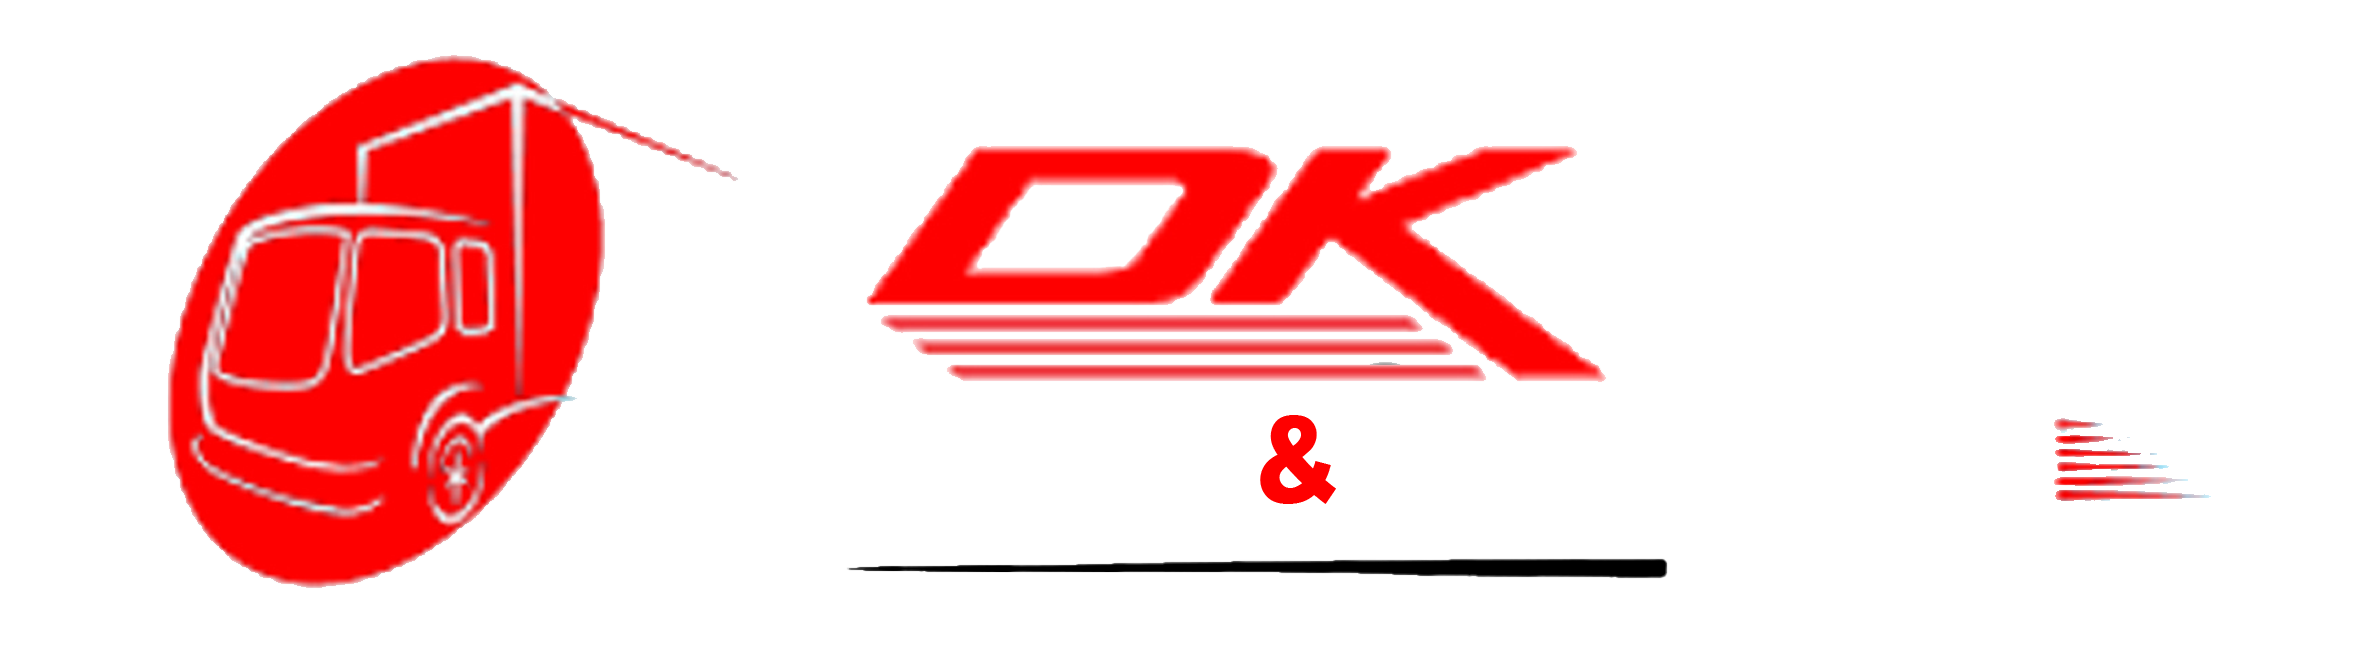 DK Removal & Transport